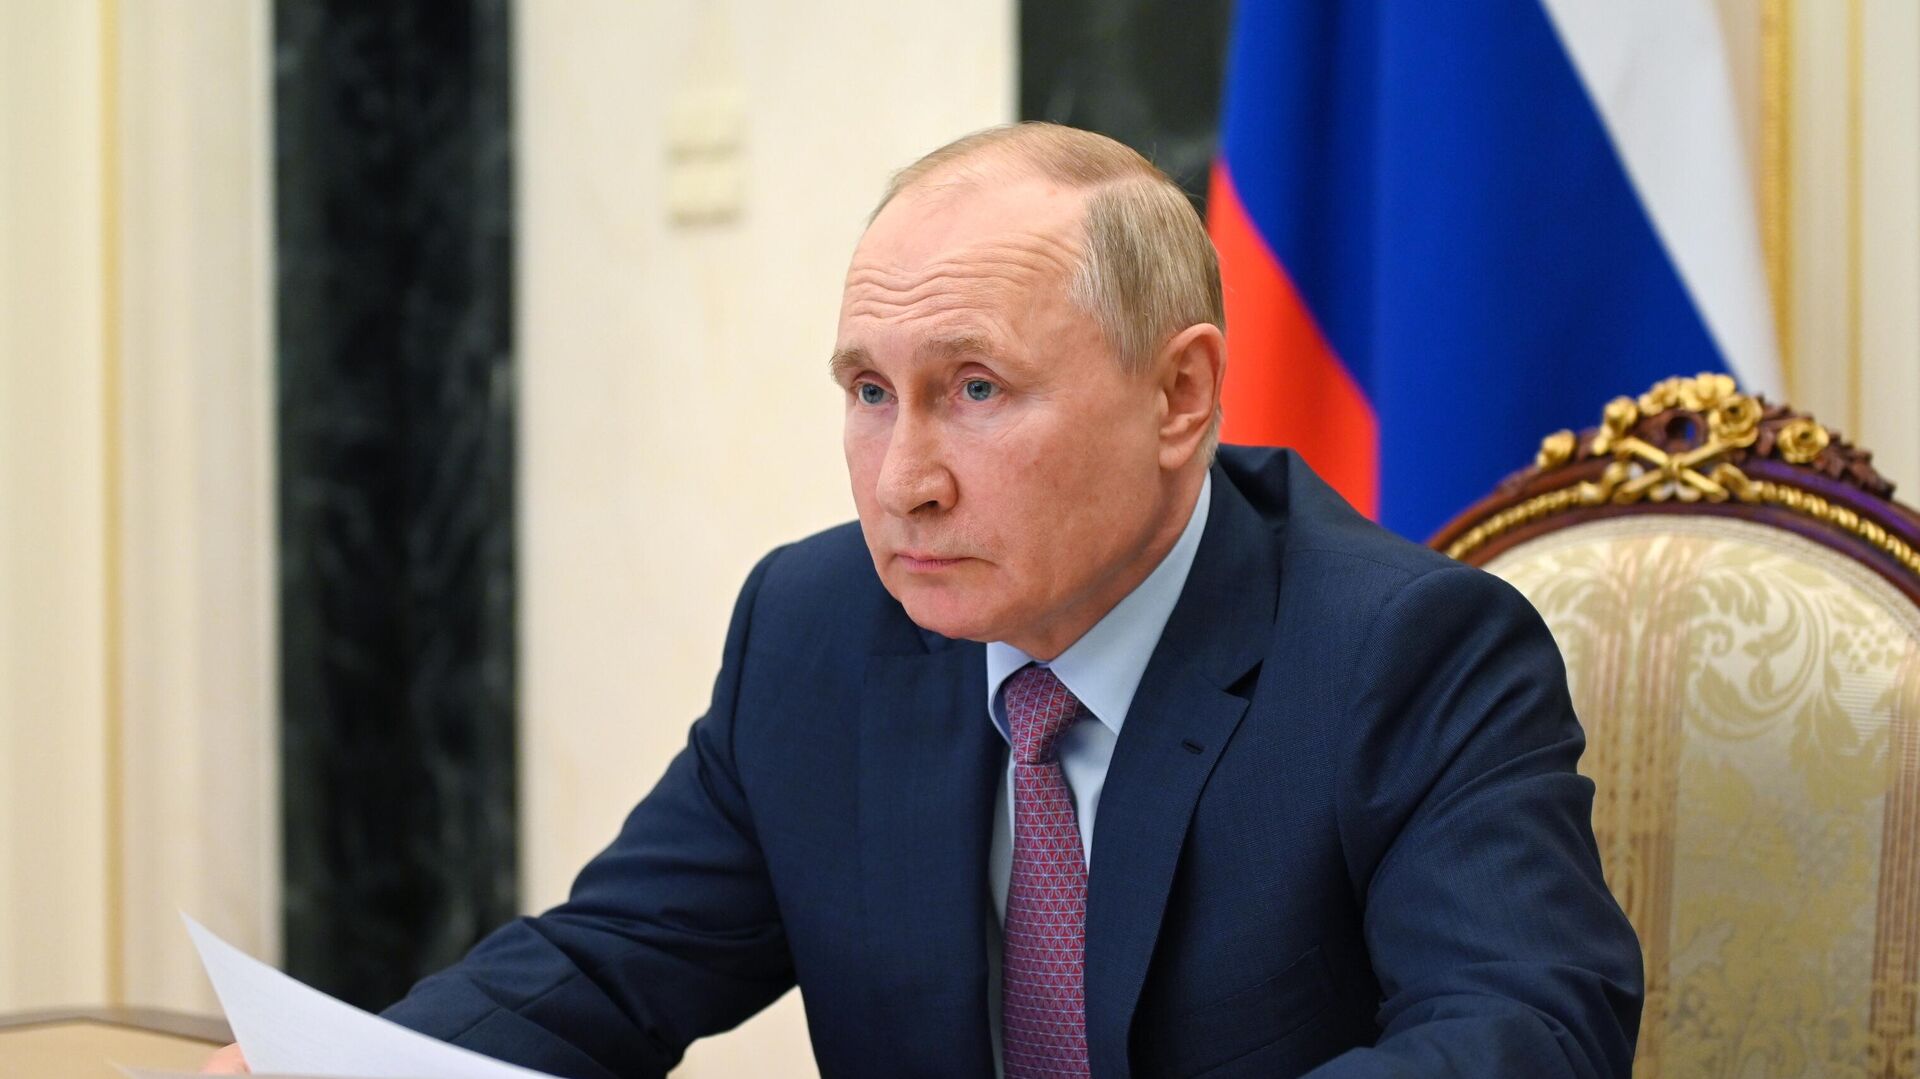 Работу Путина положительно оценивают 57 процентов россиян, показал опрос